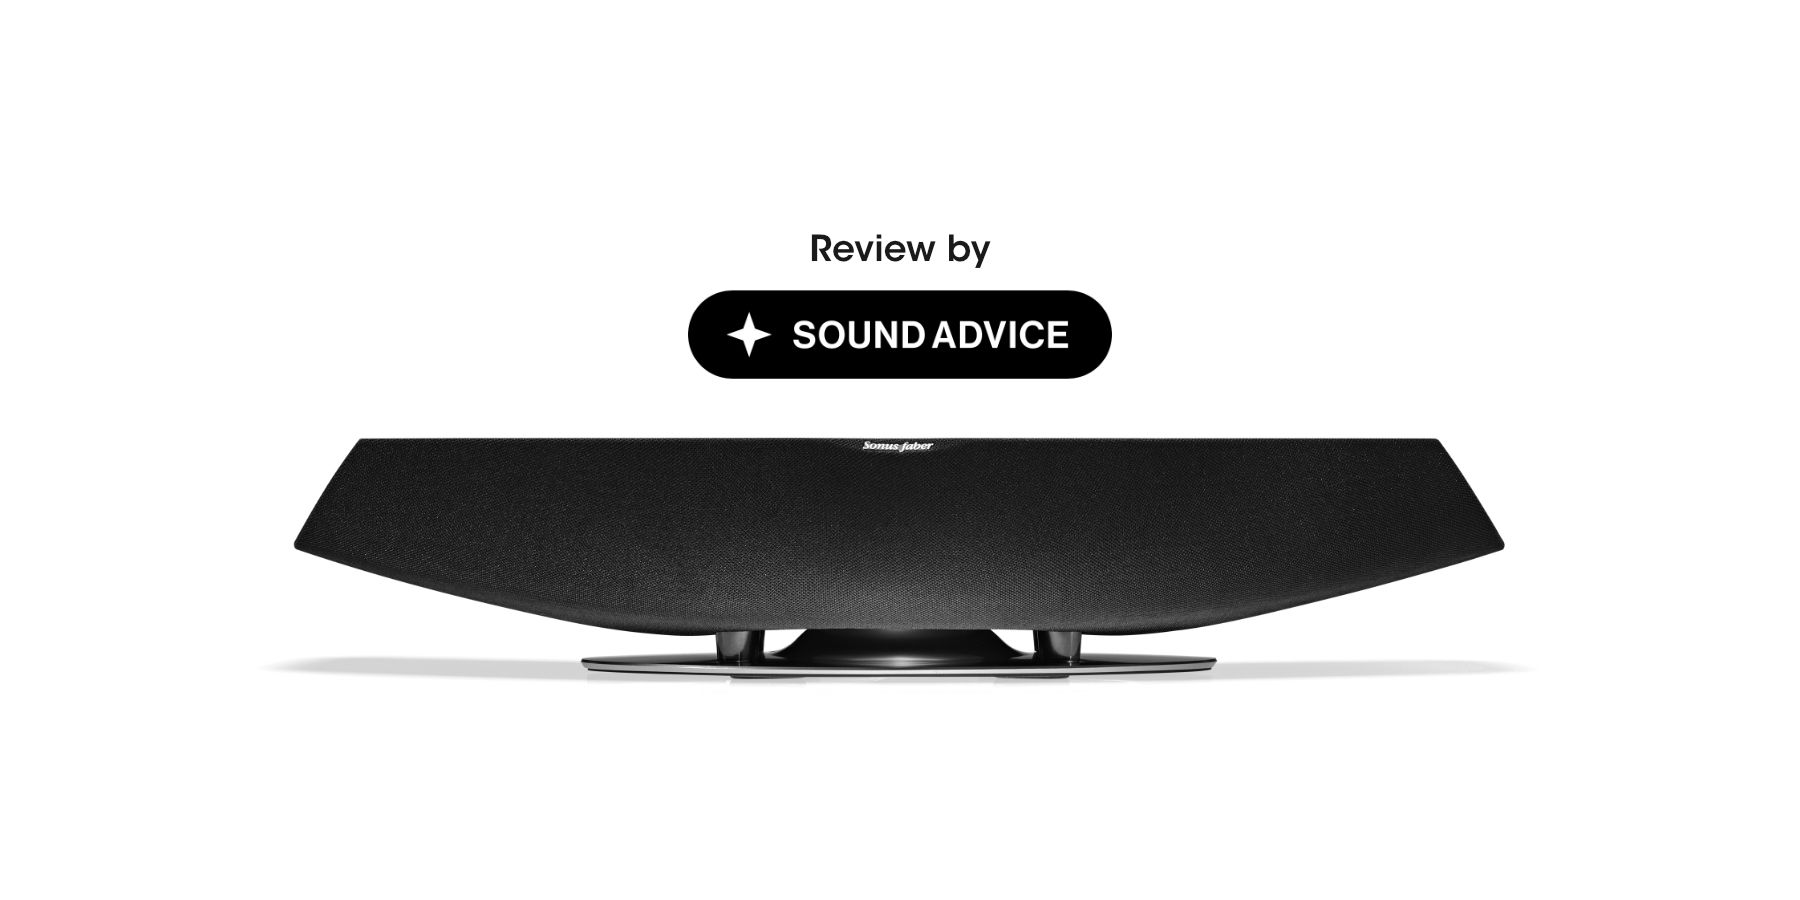 Sound Advice reviews the Sonus faber Omnia